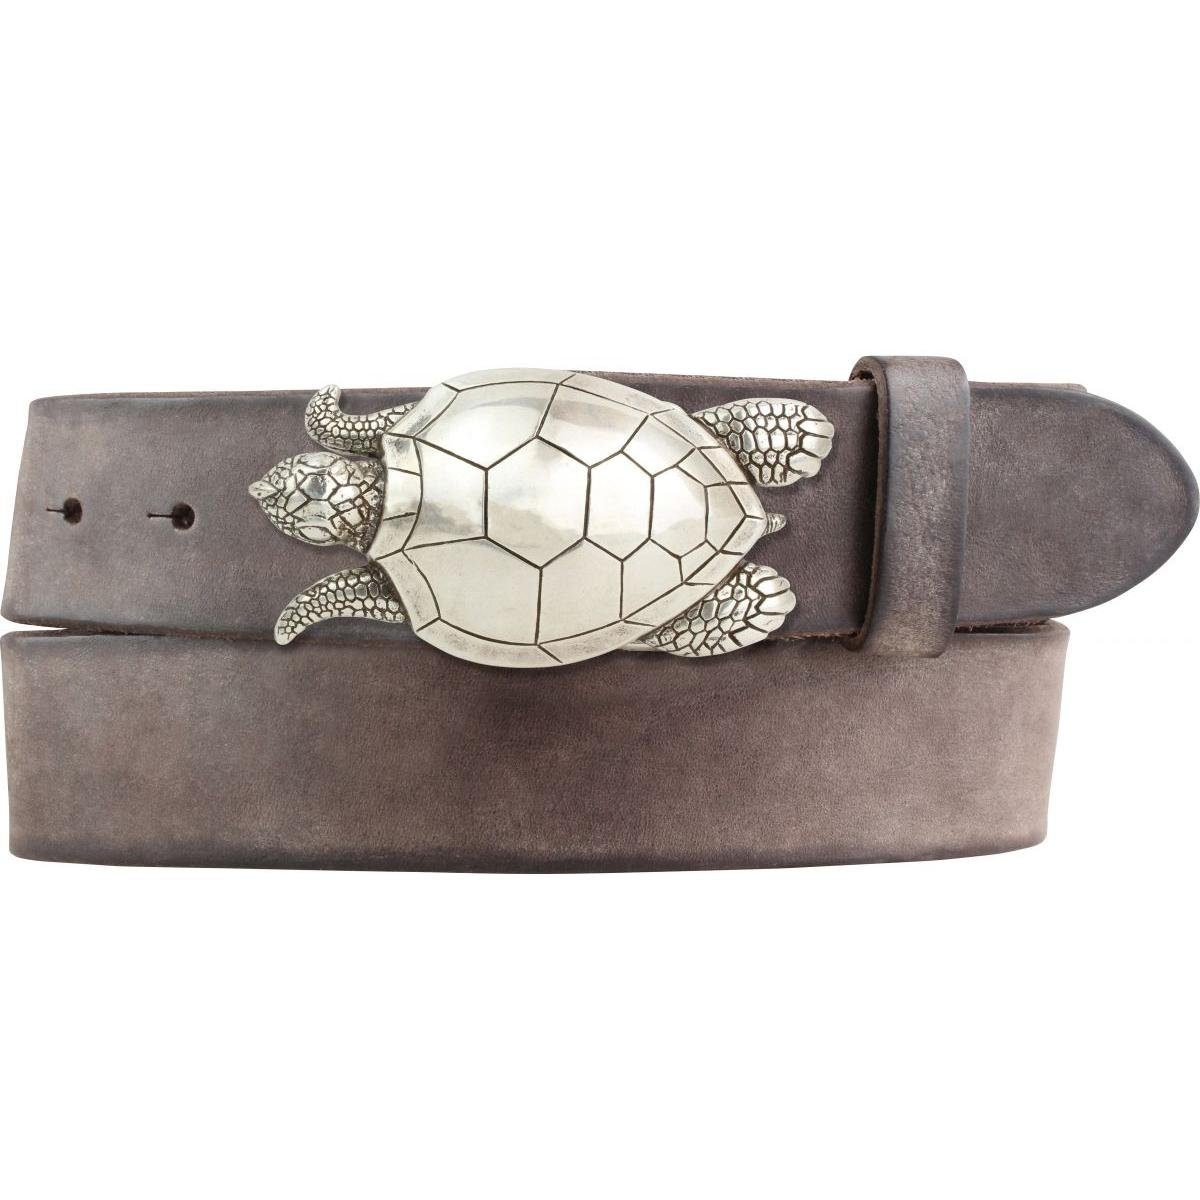 BELTINGER Ledergürtel Gürtel mit Schildkröte-Gürtelschnalle aus weichem Vollrindleder 4 cm U Braun, Silber